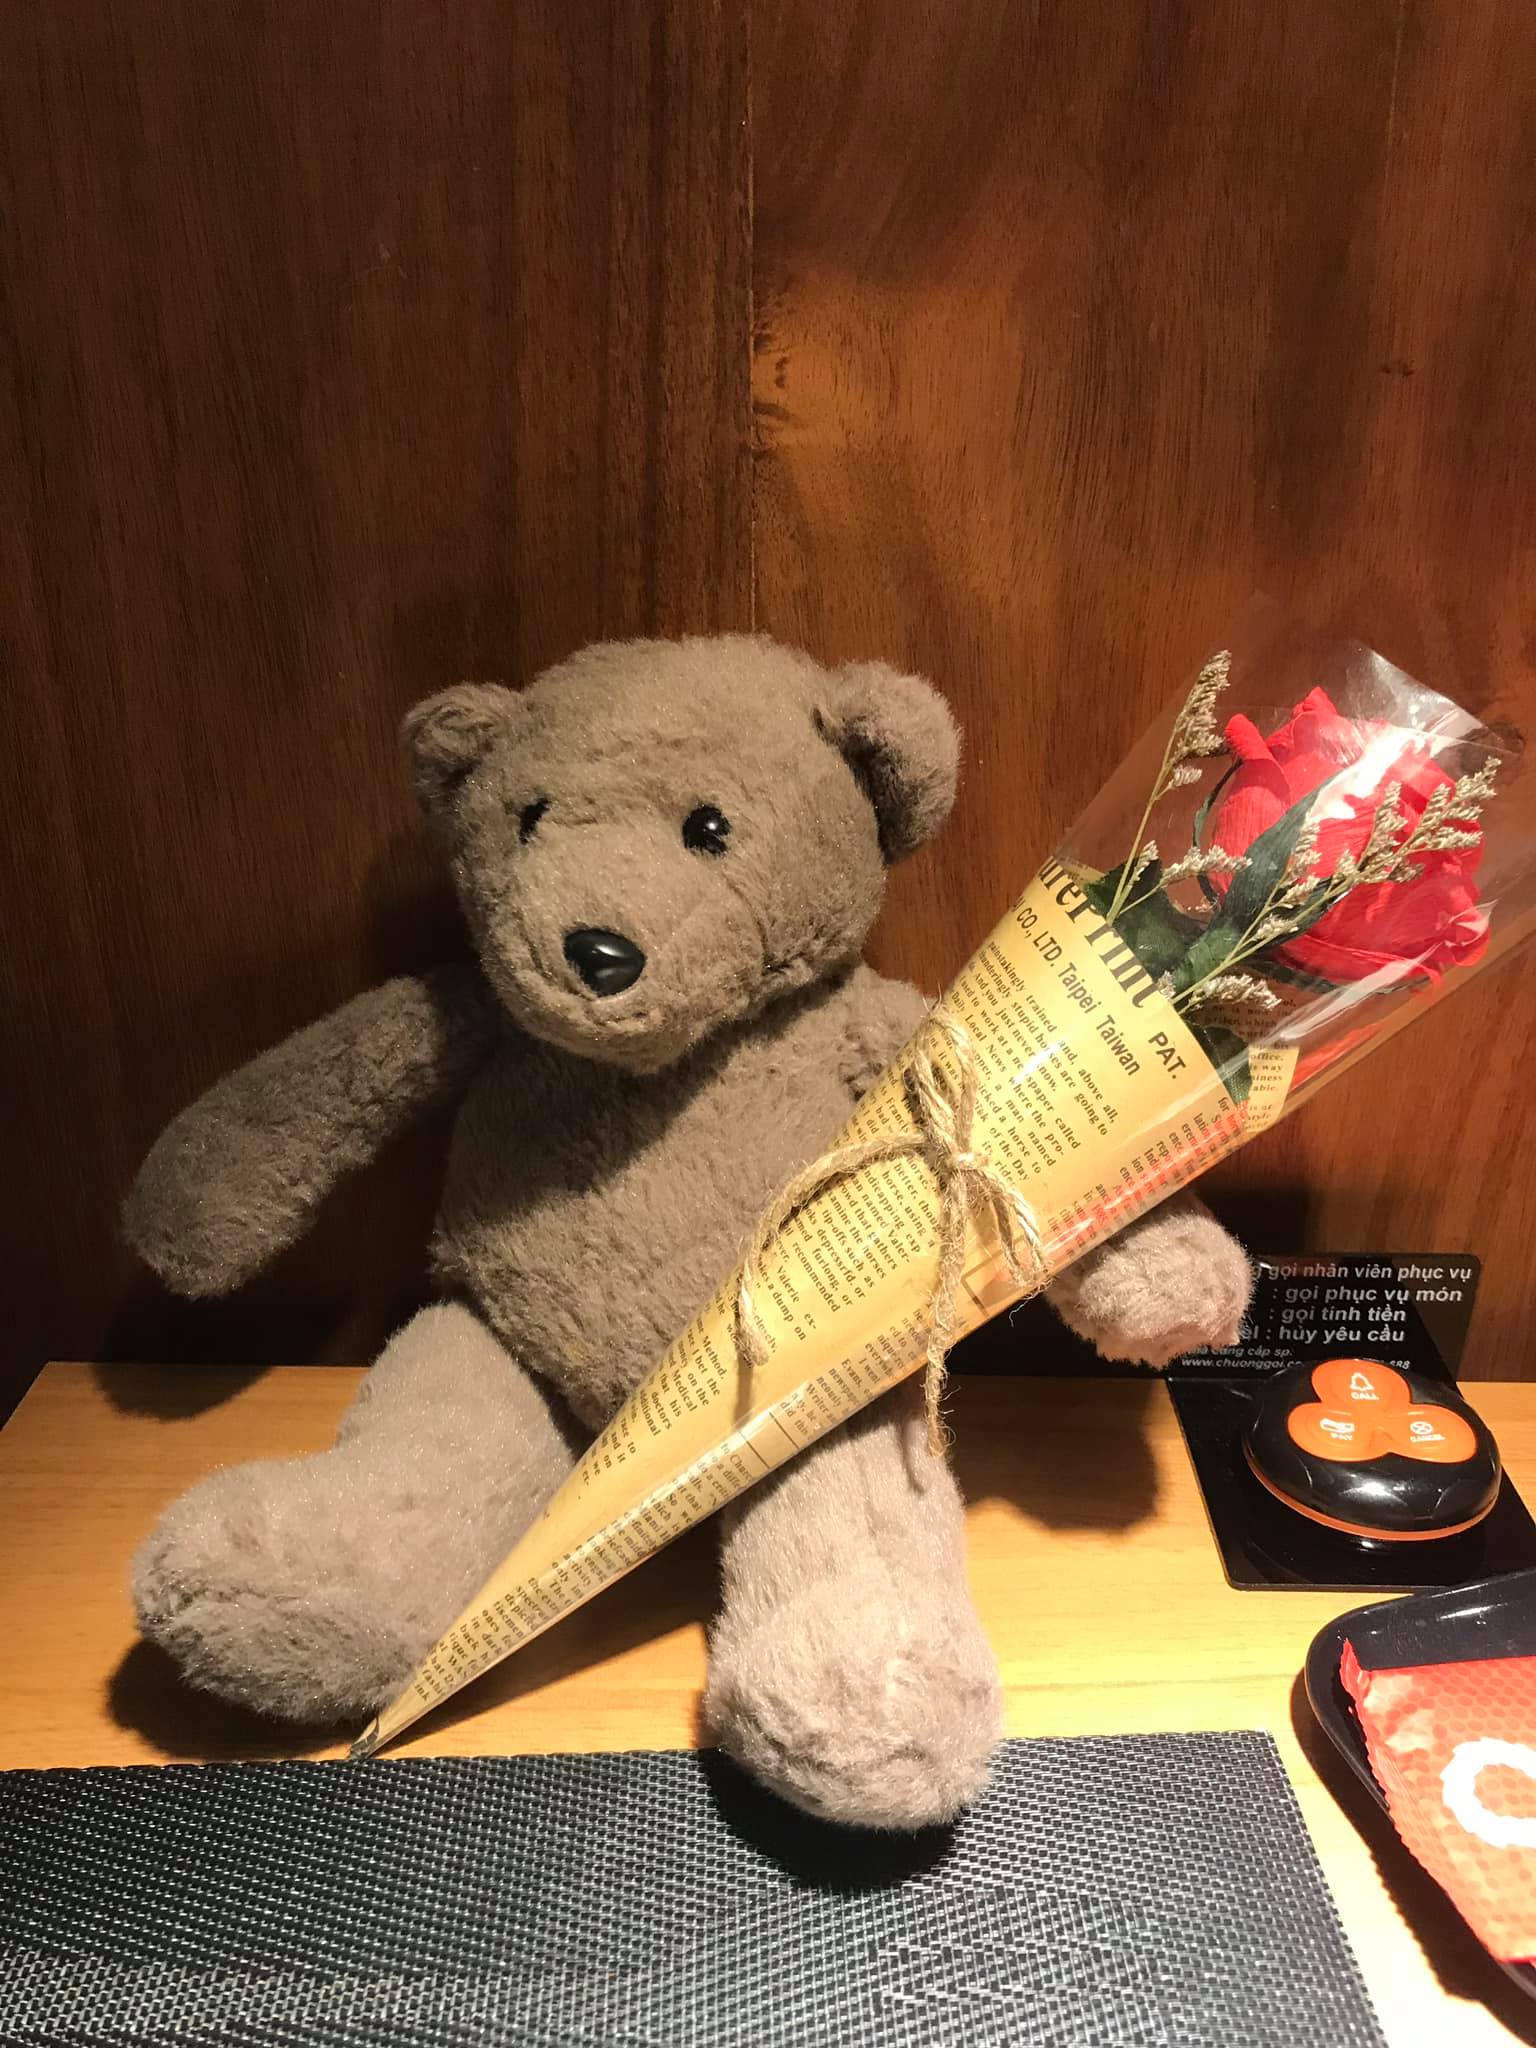 Gấu bông và hoa hồng là quà Valentine mẹ tặng con gái năm nào đó. Ảnh do tác giả cung cấp.